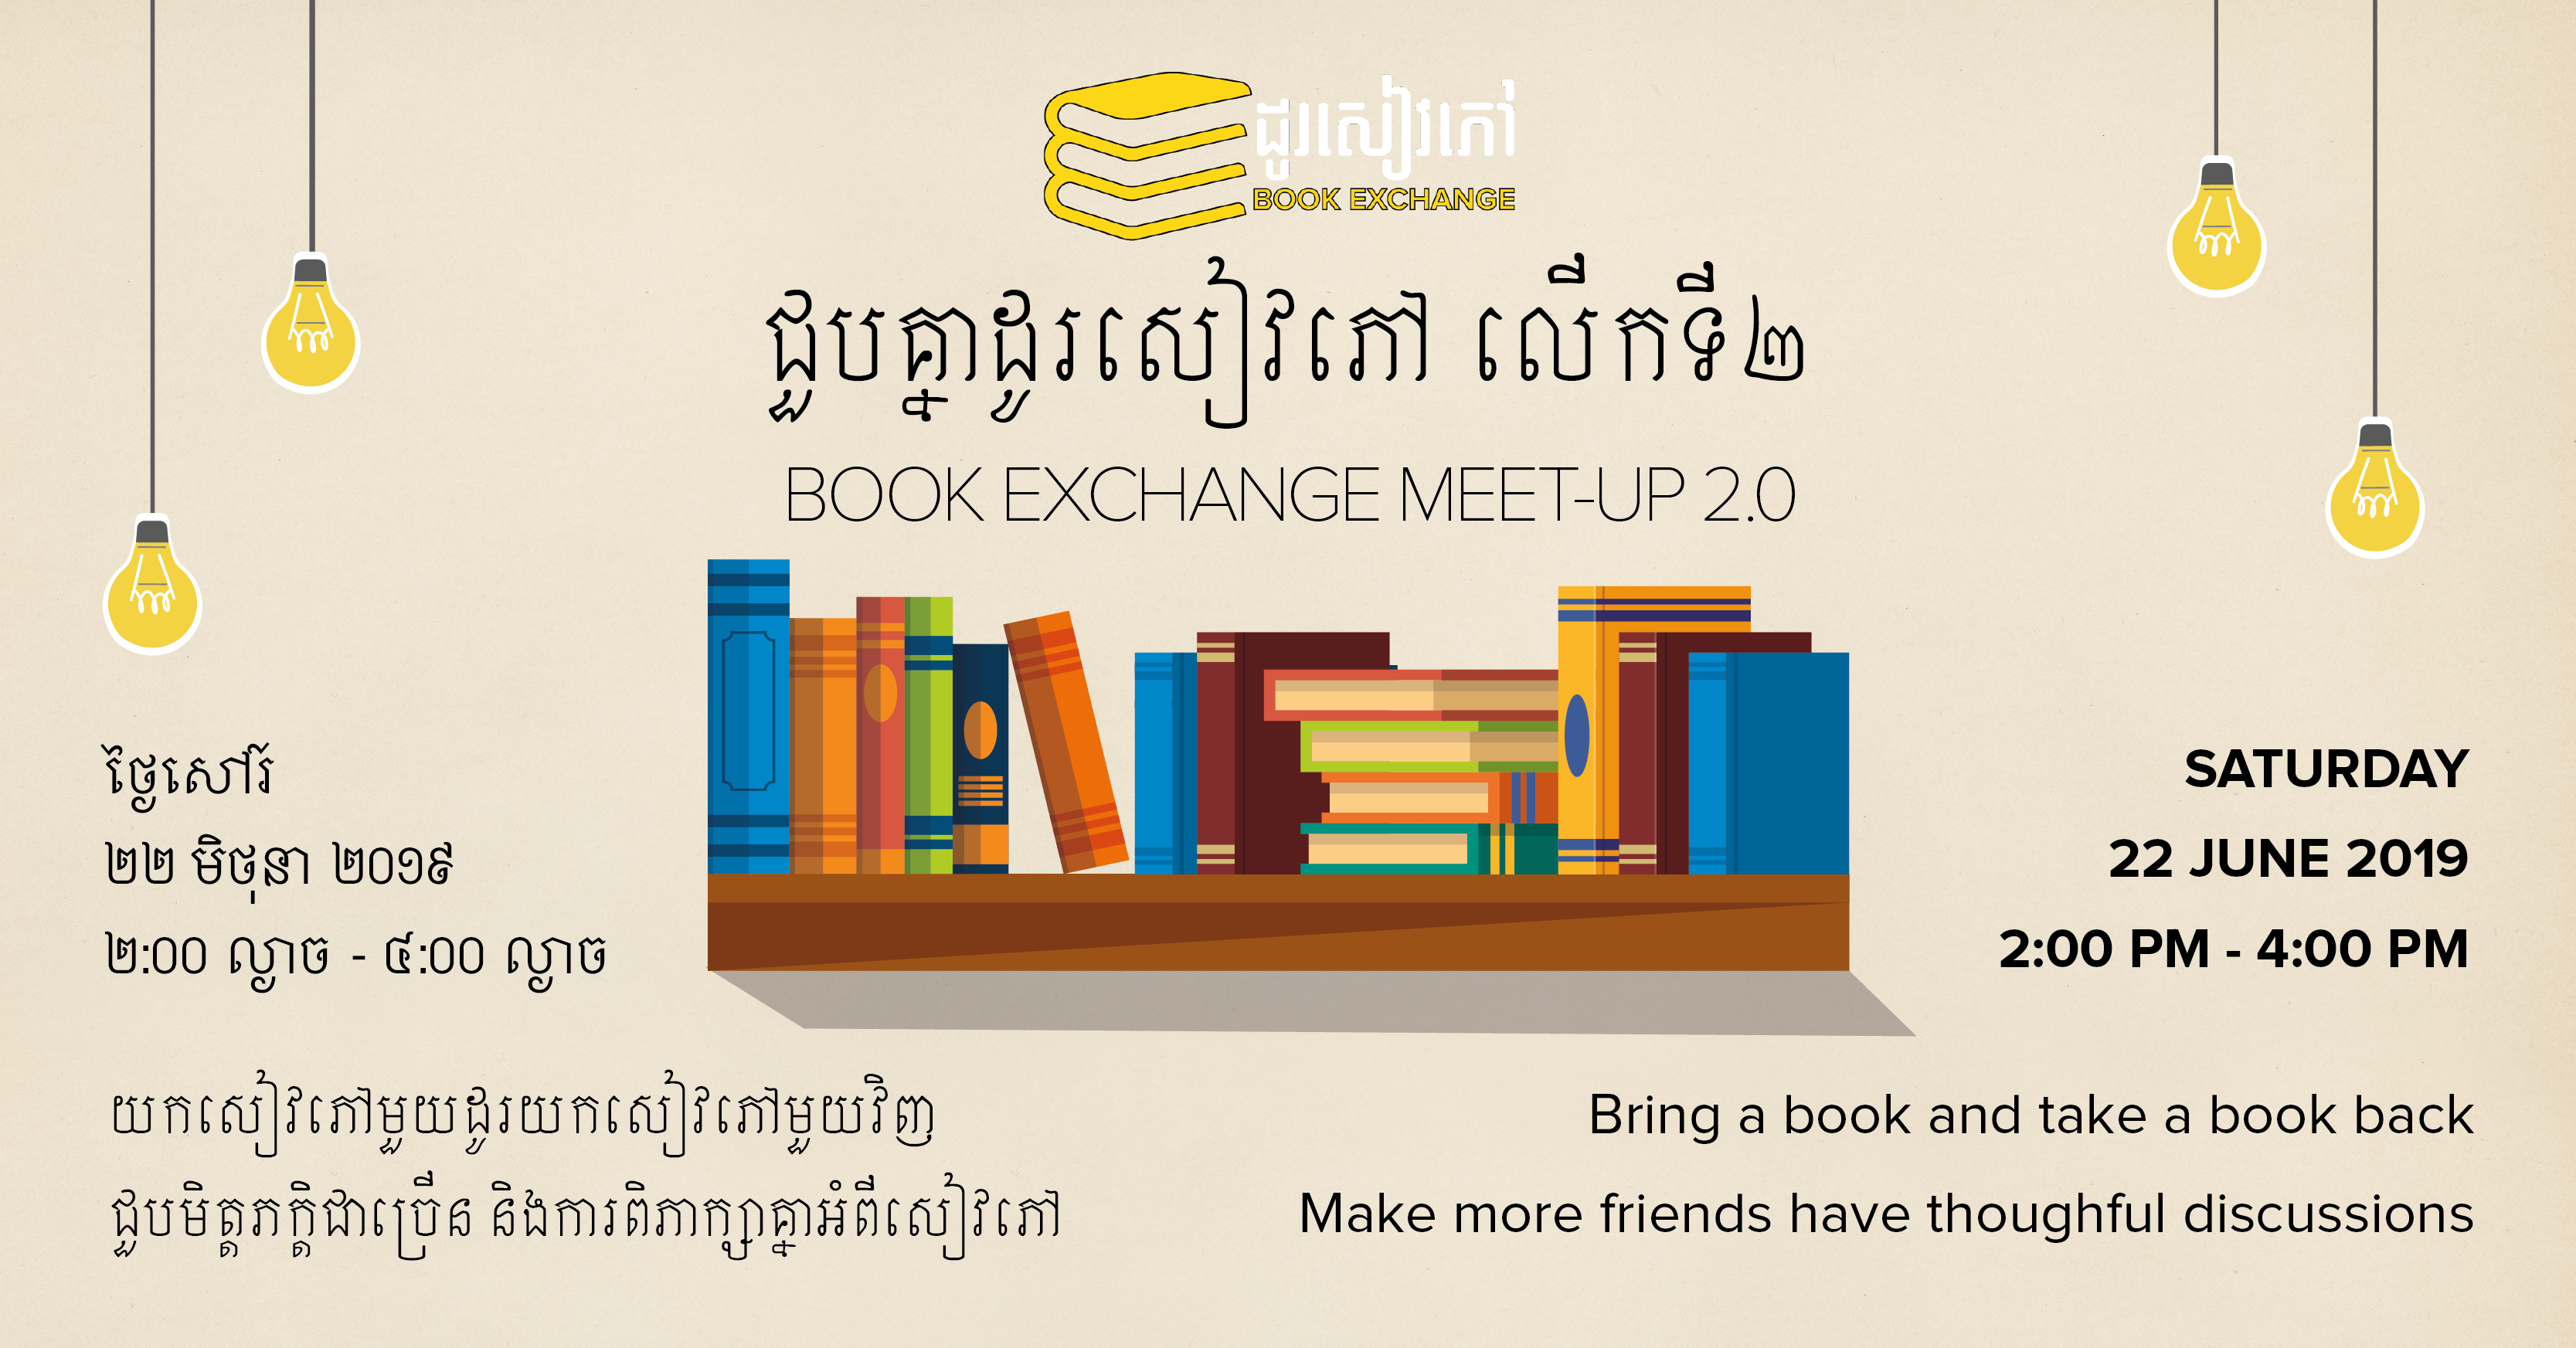 ជួបគ្នាដូរសៀវភៅលើកទី២ Book Exchange Meet-Up 2.0